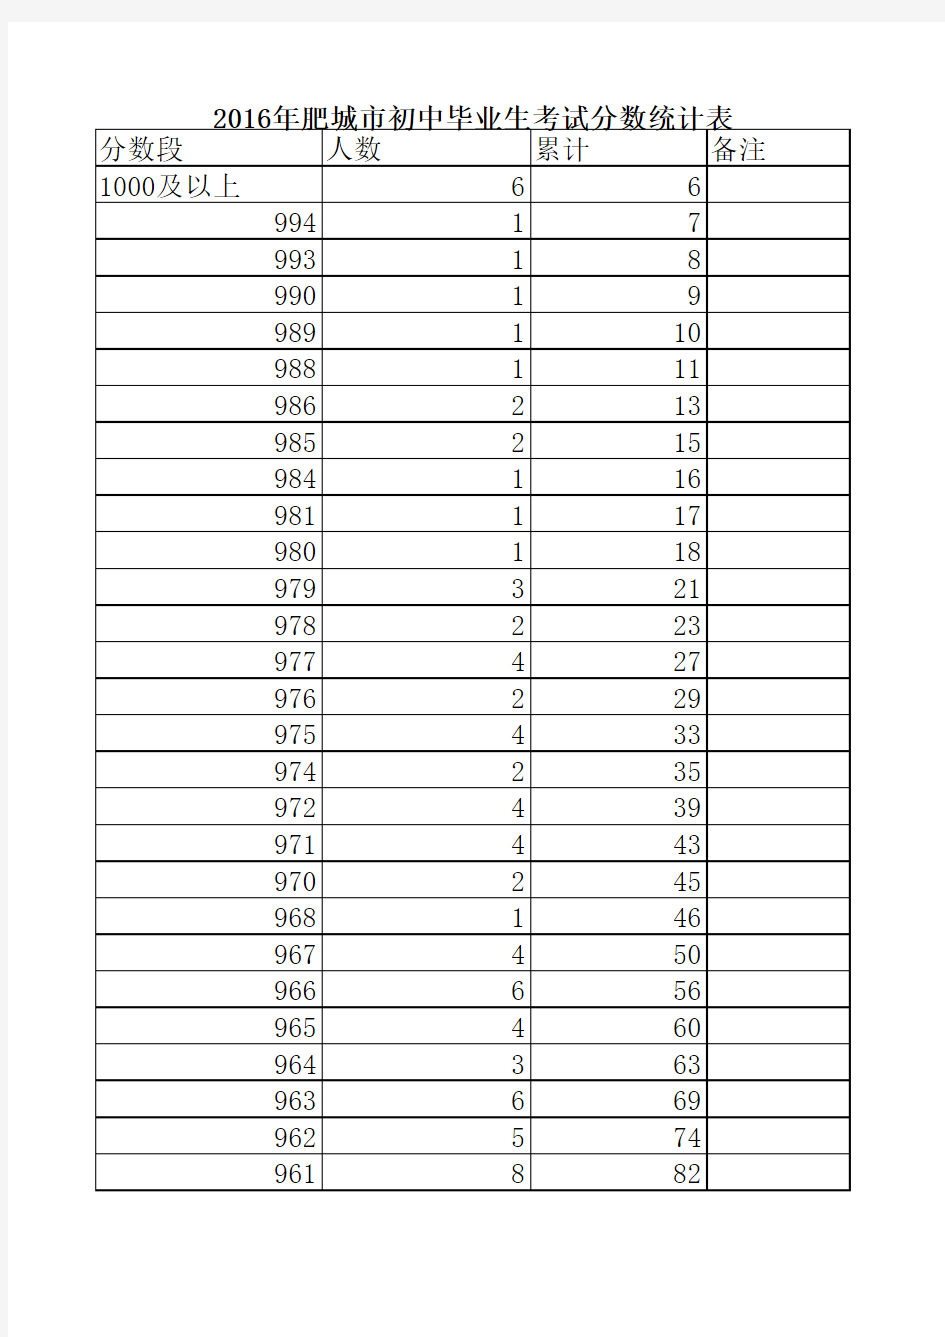 2016年肥城市初中毕业生考试分数统计表